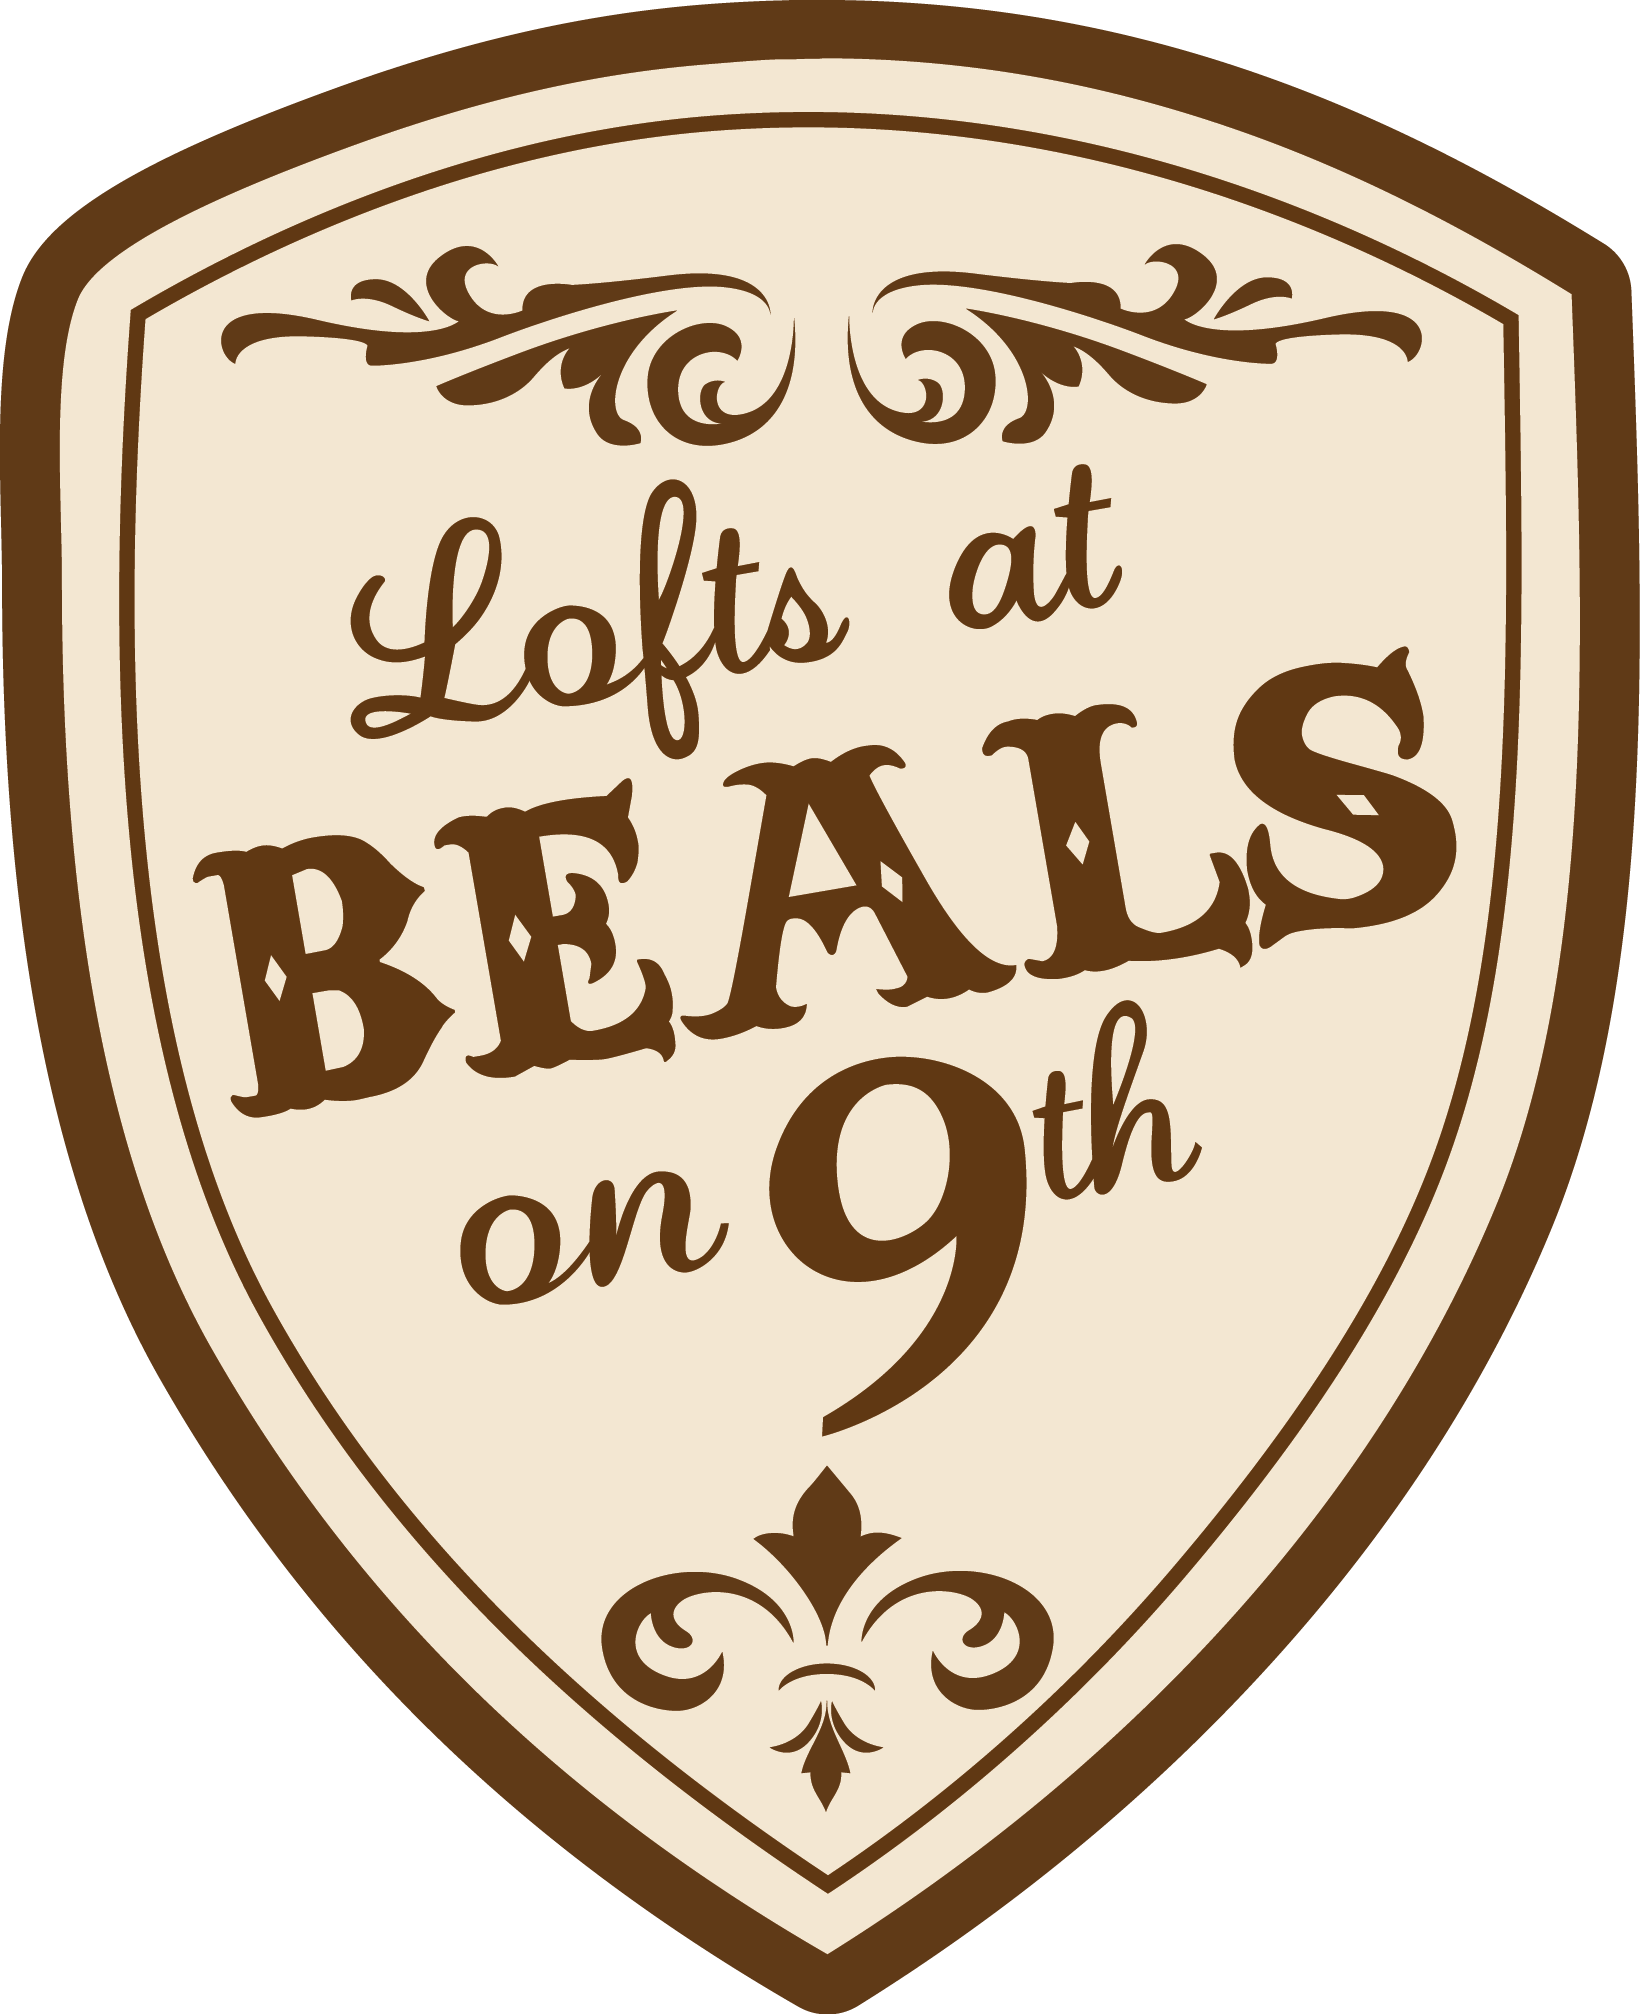 Beals Logo - Apartments in Columbia MO | Lofts at Beals on 9th